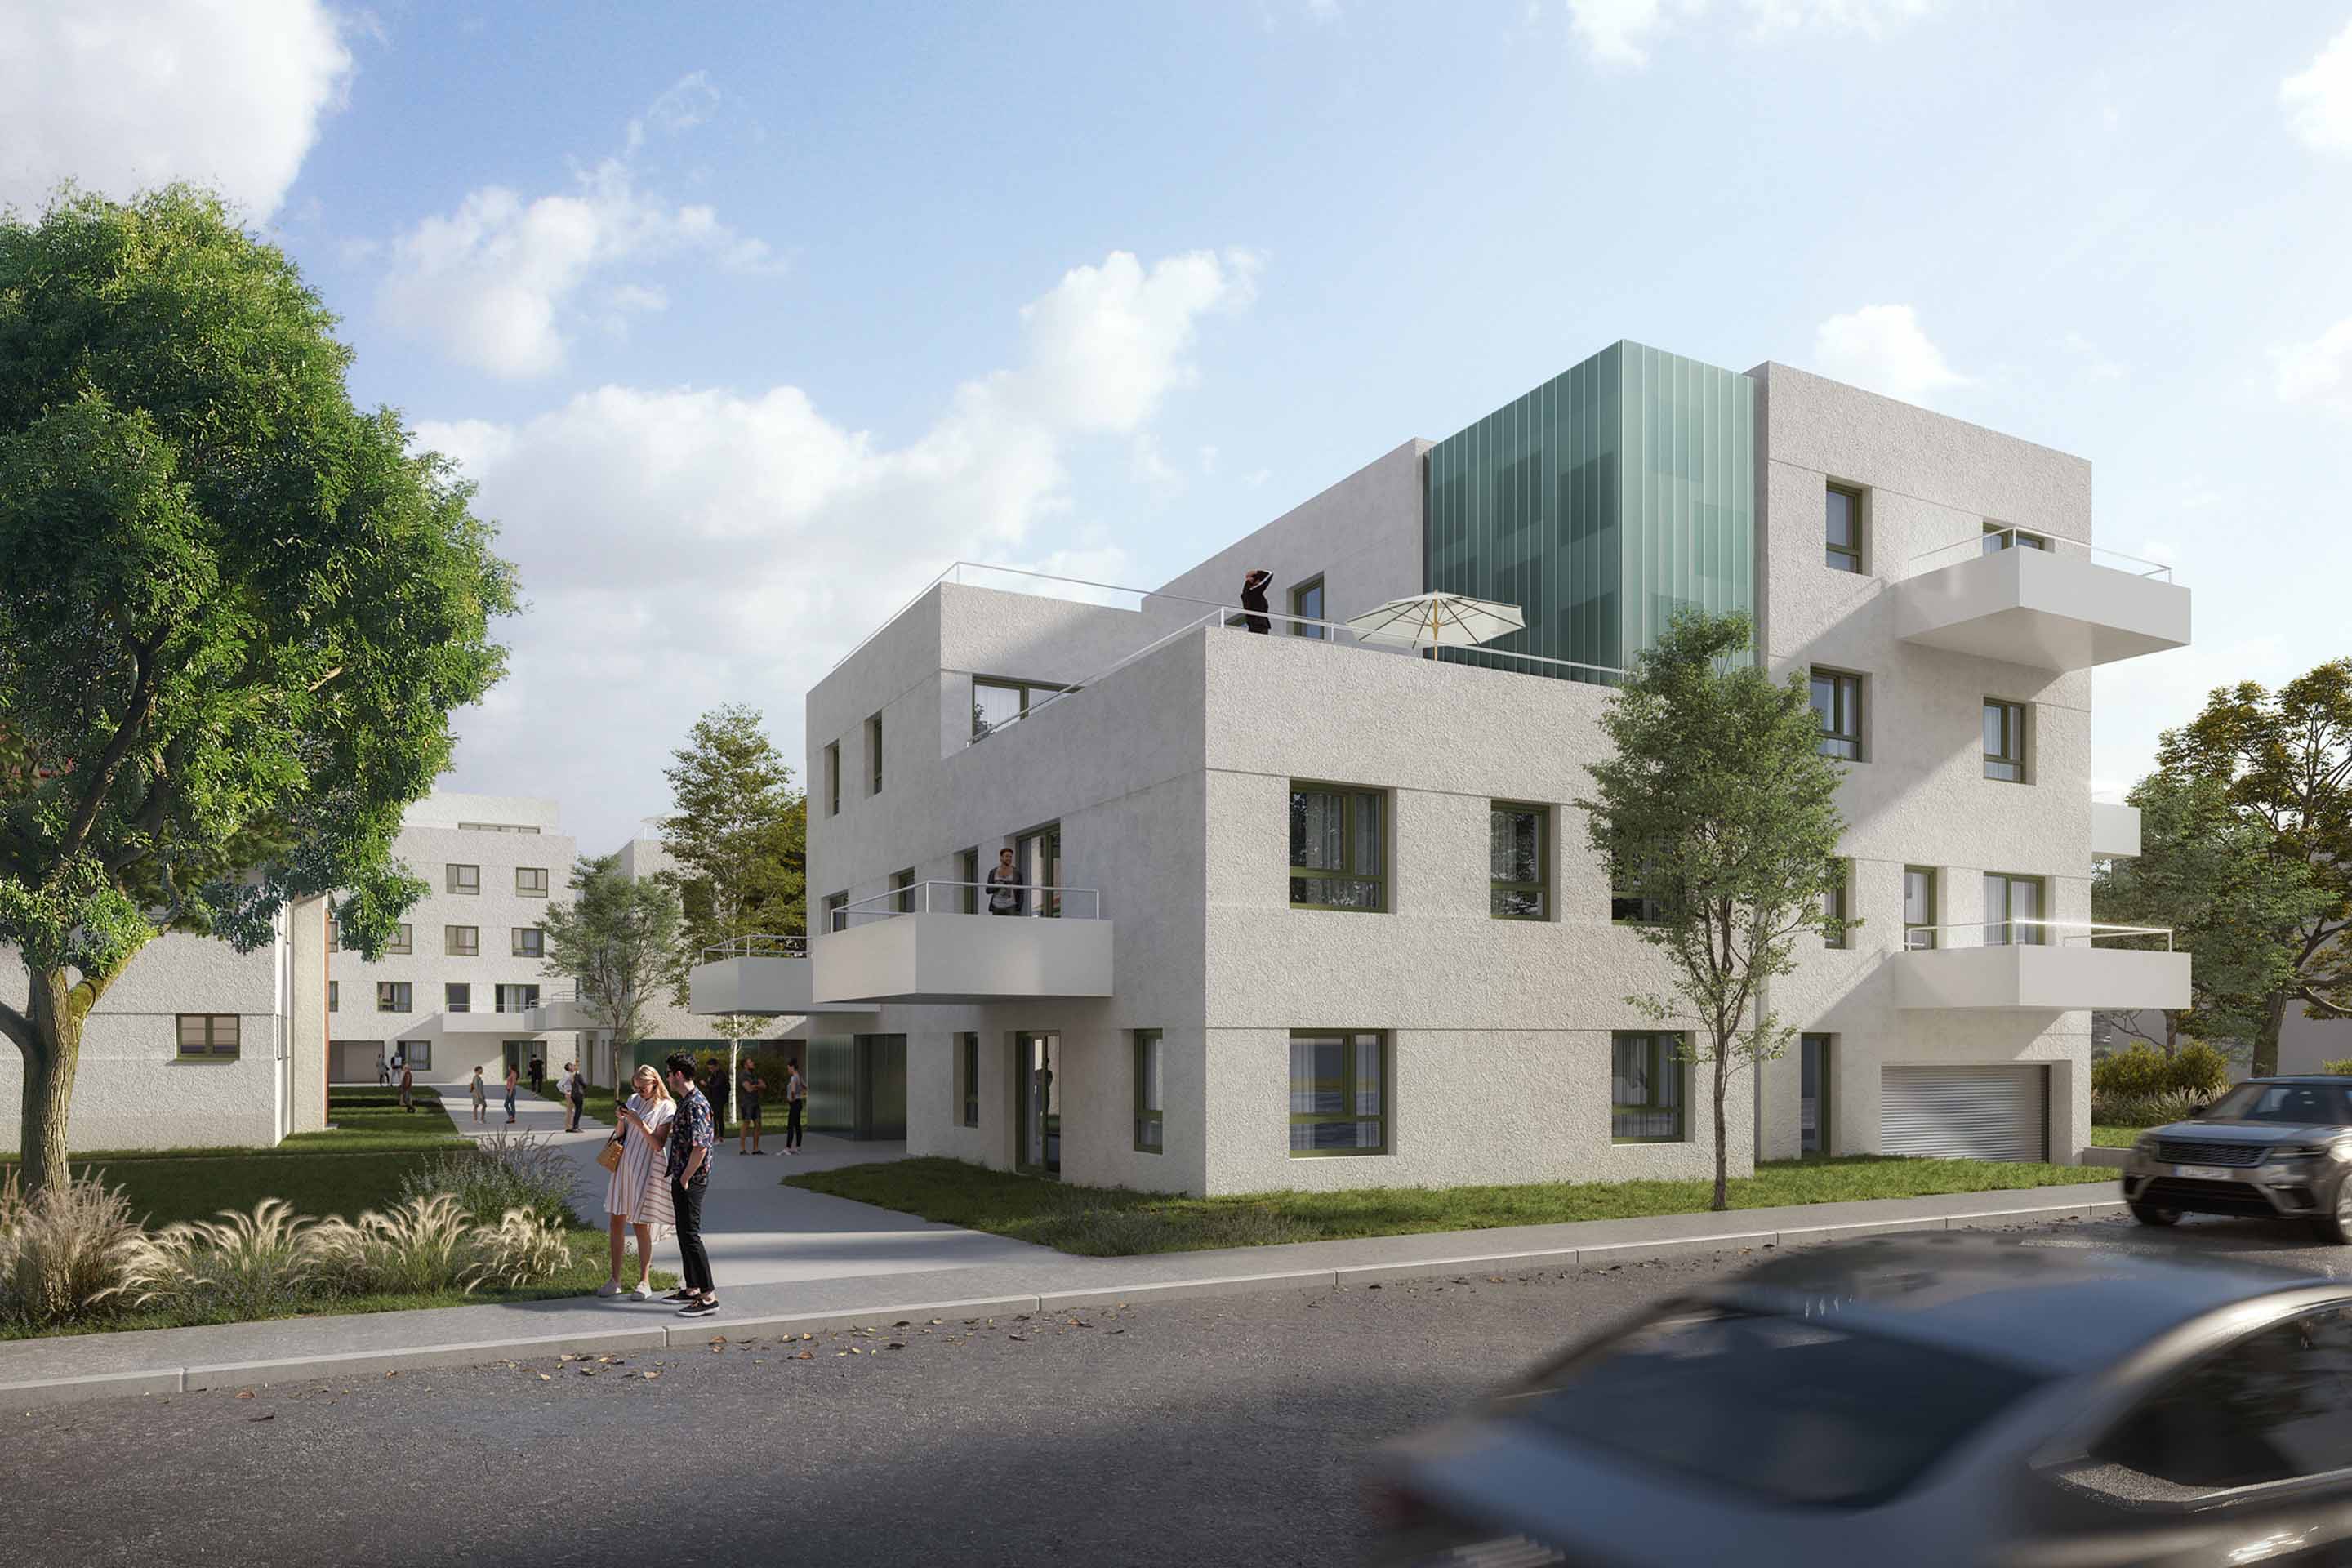 Foto: Visualisierung des Projekts Sintstrasse in Linz von STRABAG Real Estate